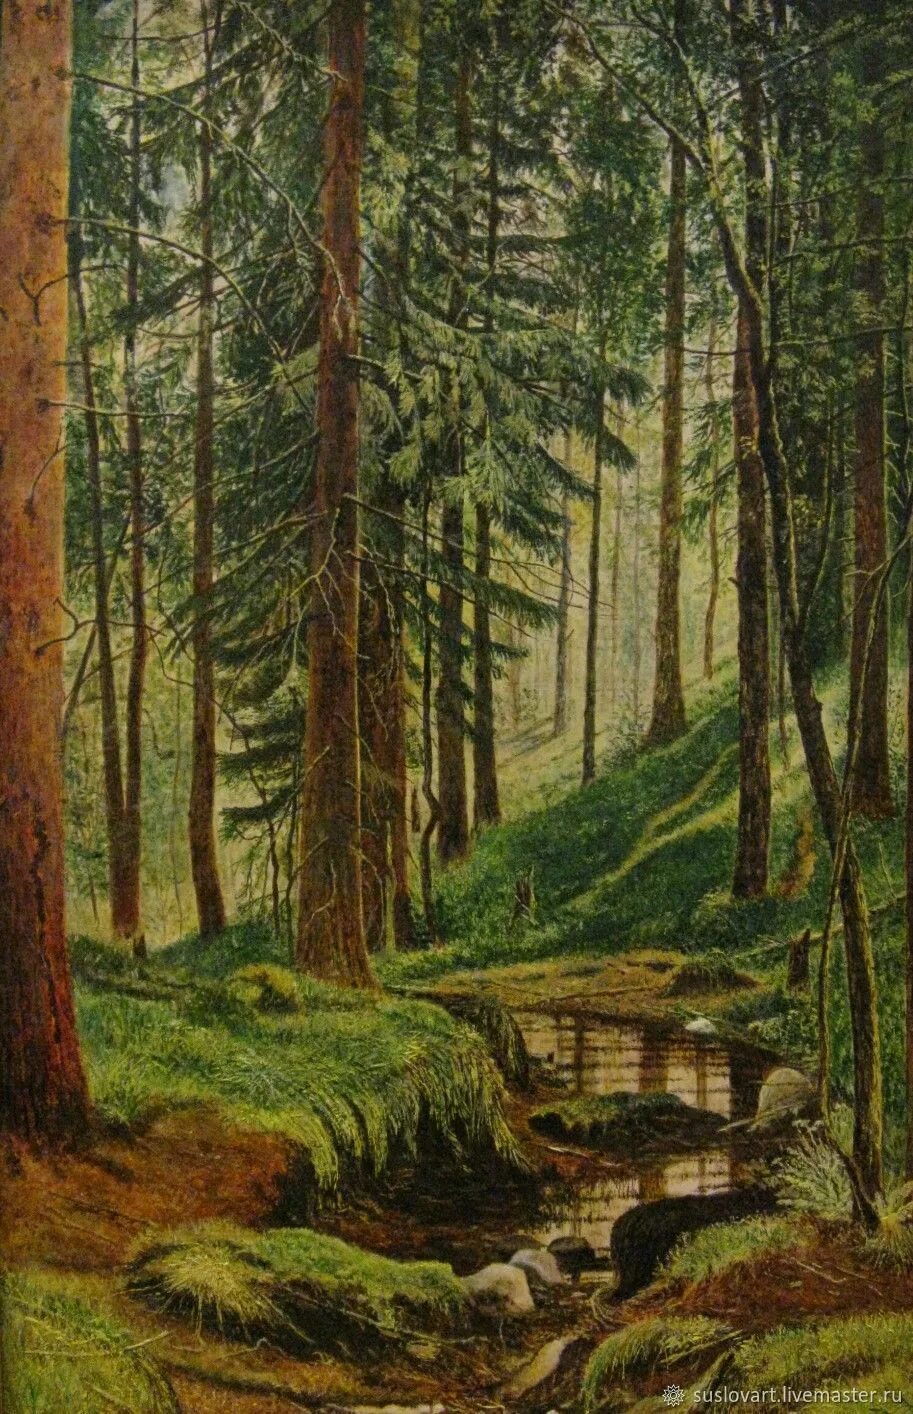 Ручей шишкина. Картина Шишкина Лесной ручей. Картина Ивана Шишкина Косогор.